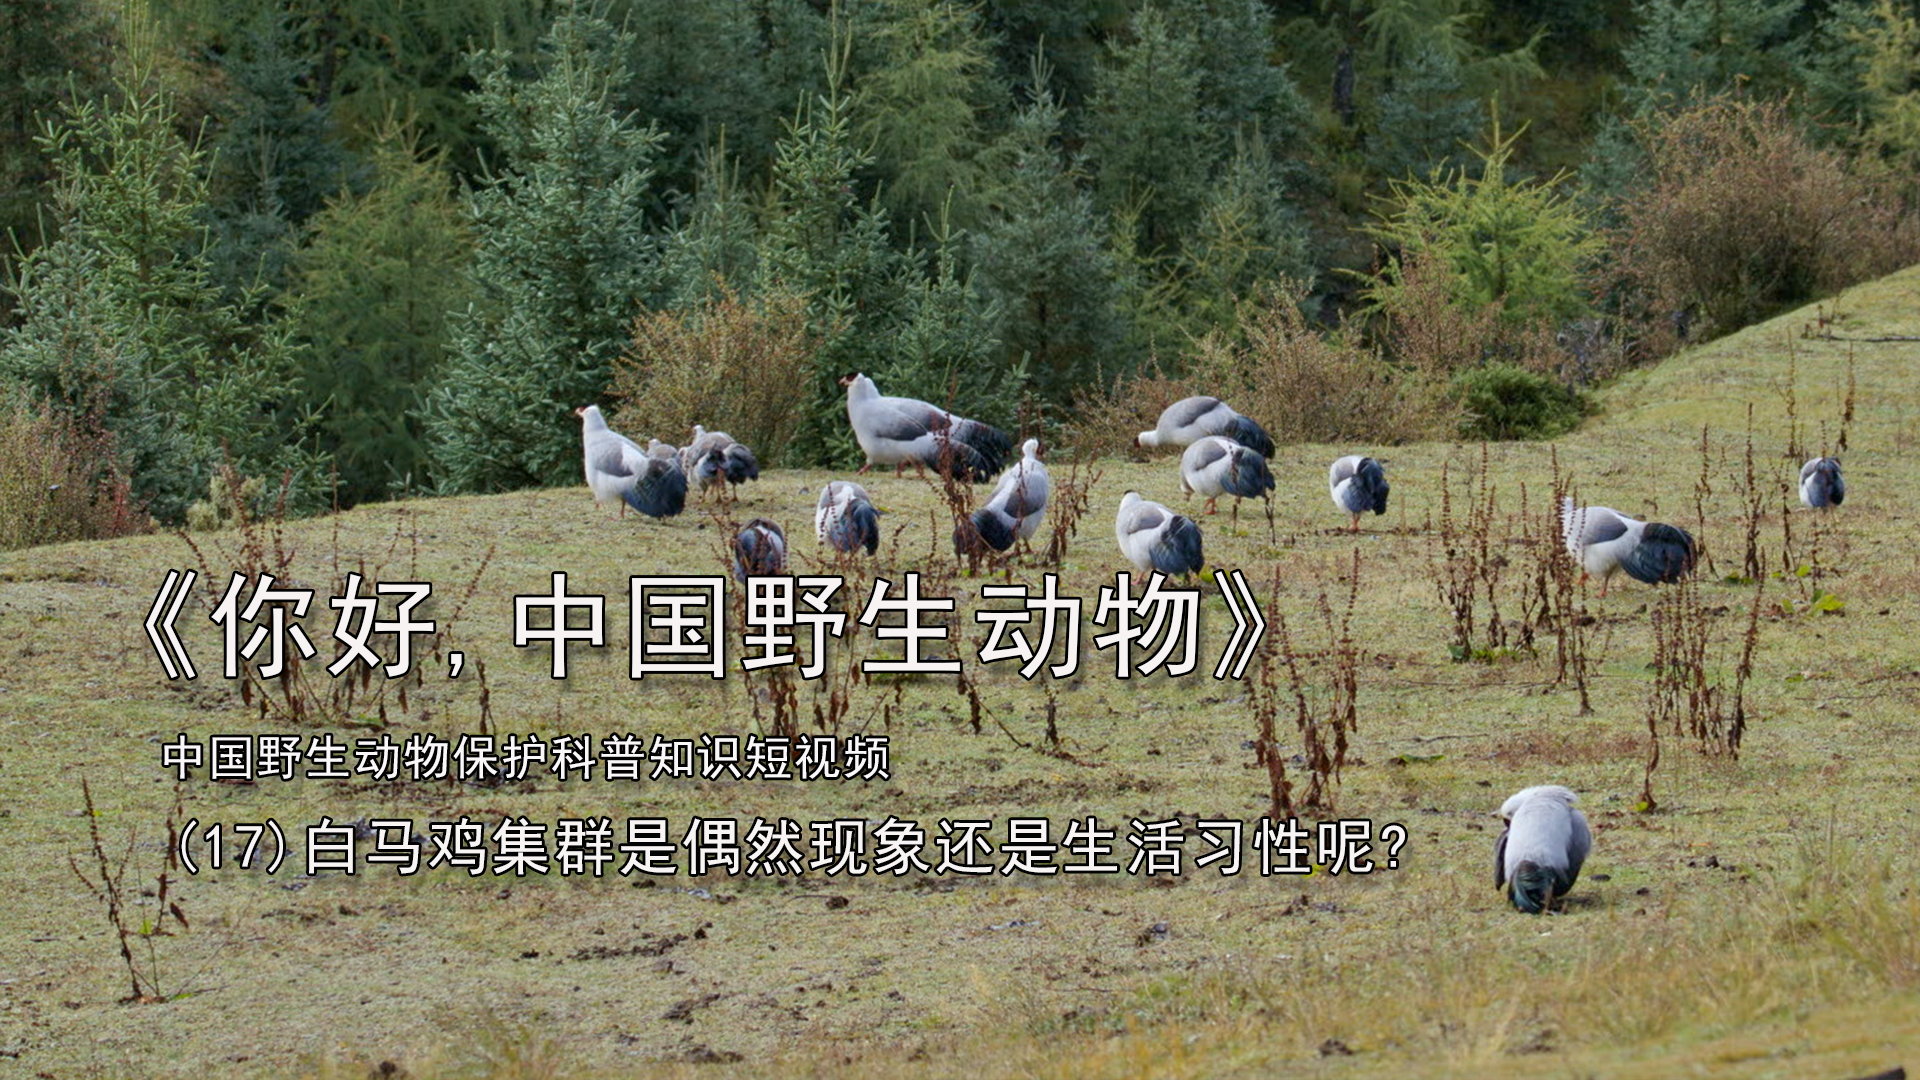 白马鸡集群是偶然现象还是生活习性呢